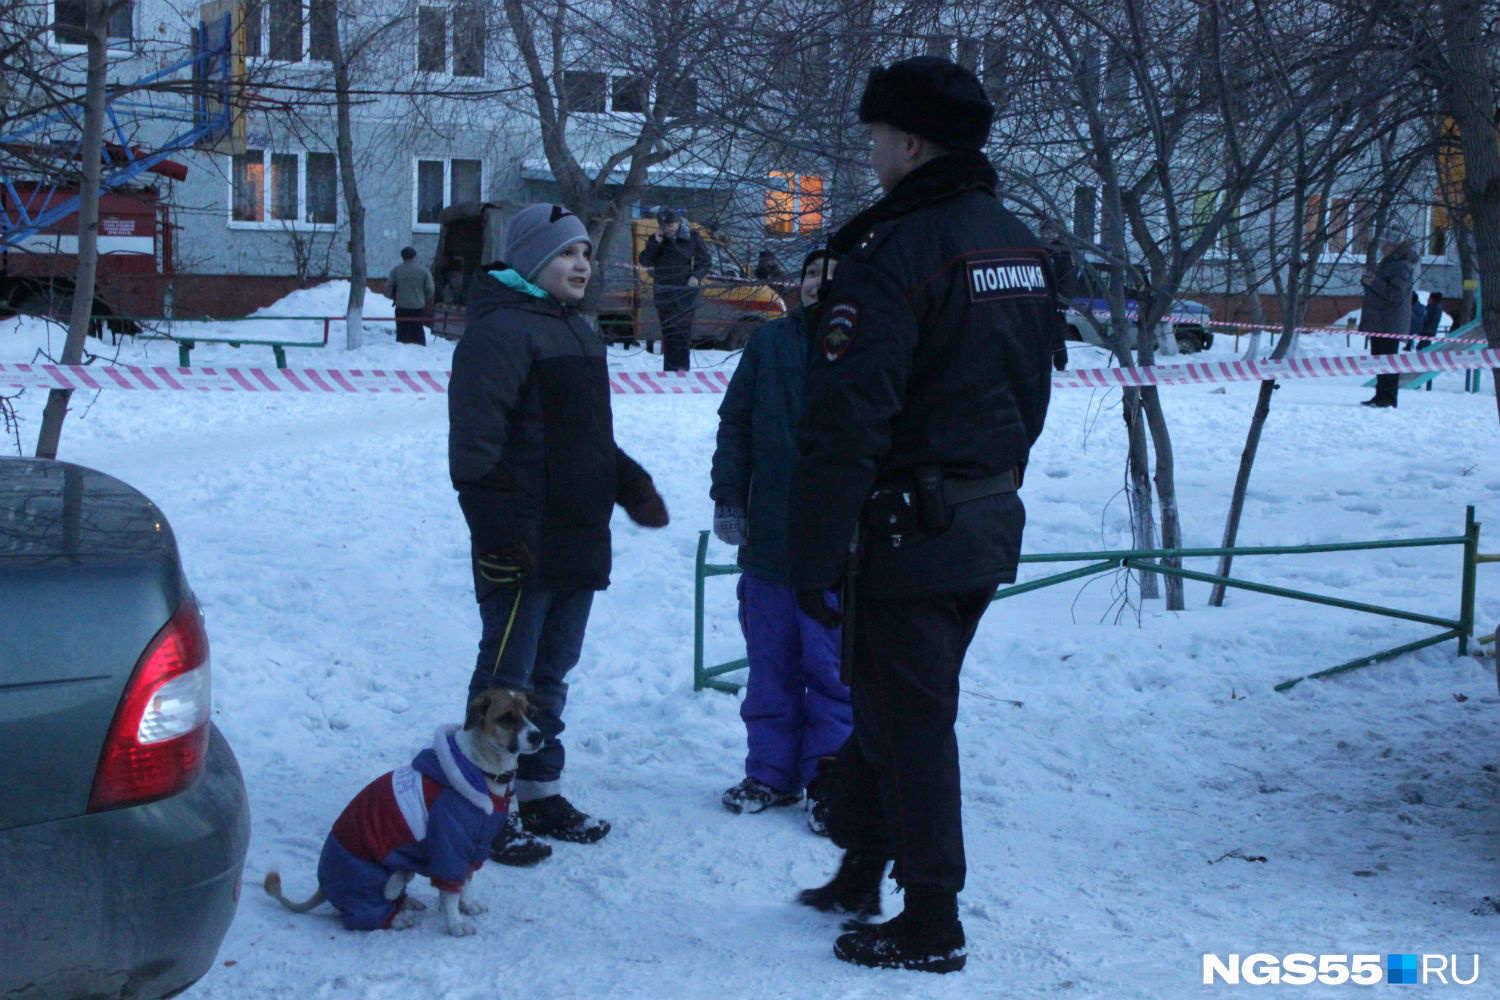 Дети от скуки беседуют то с одним, то с другим полицейским. Фото Олега Малиновского